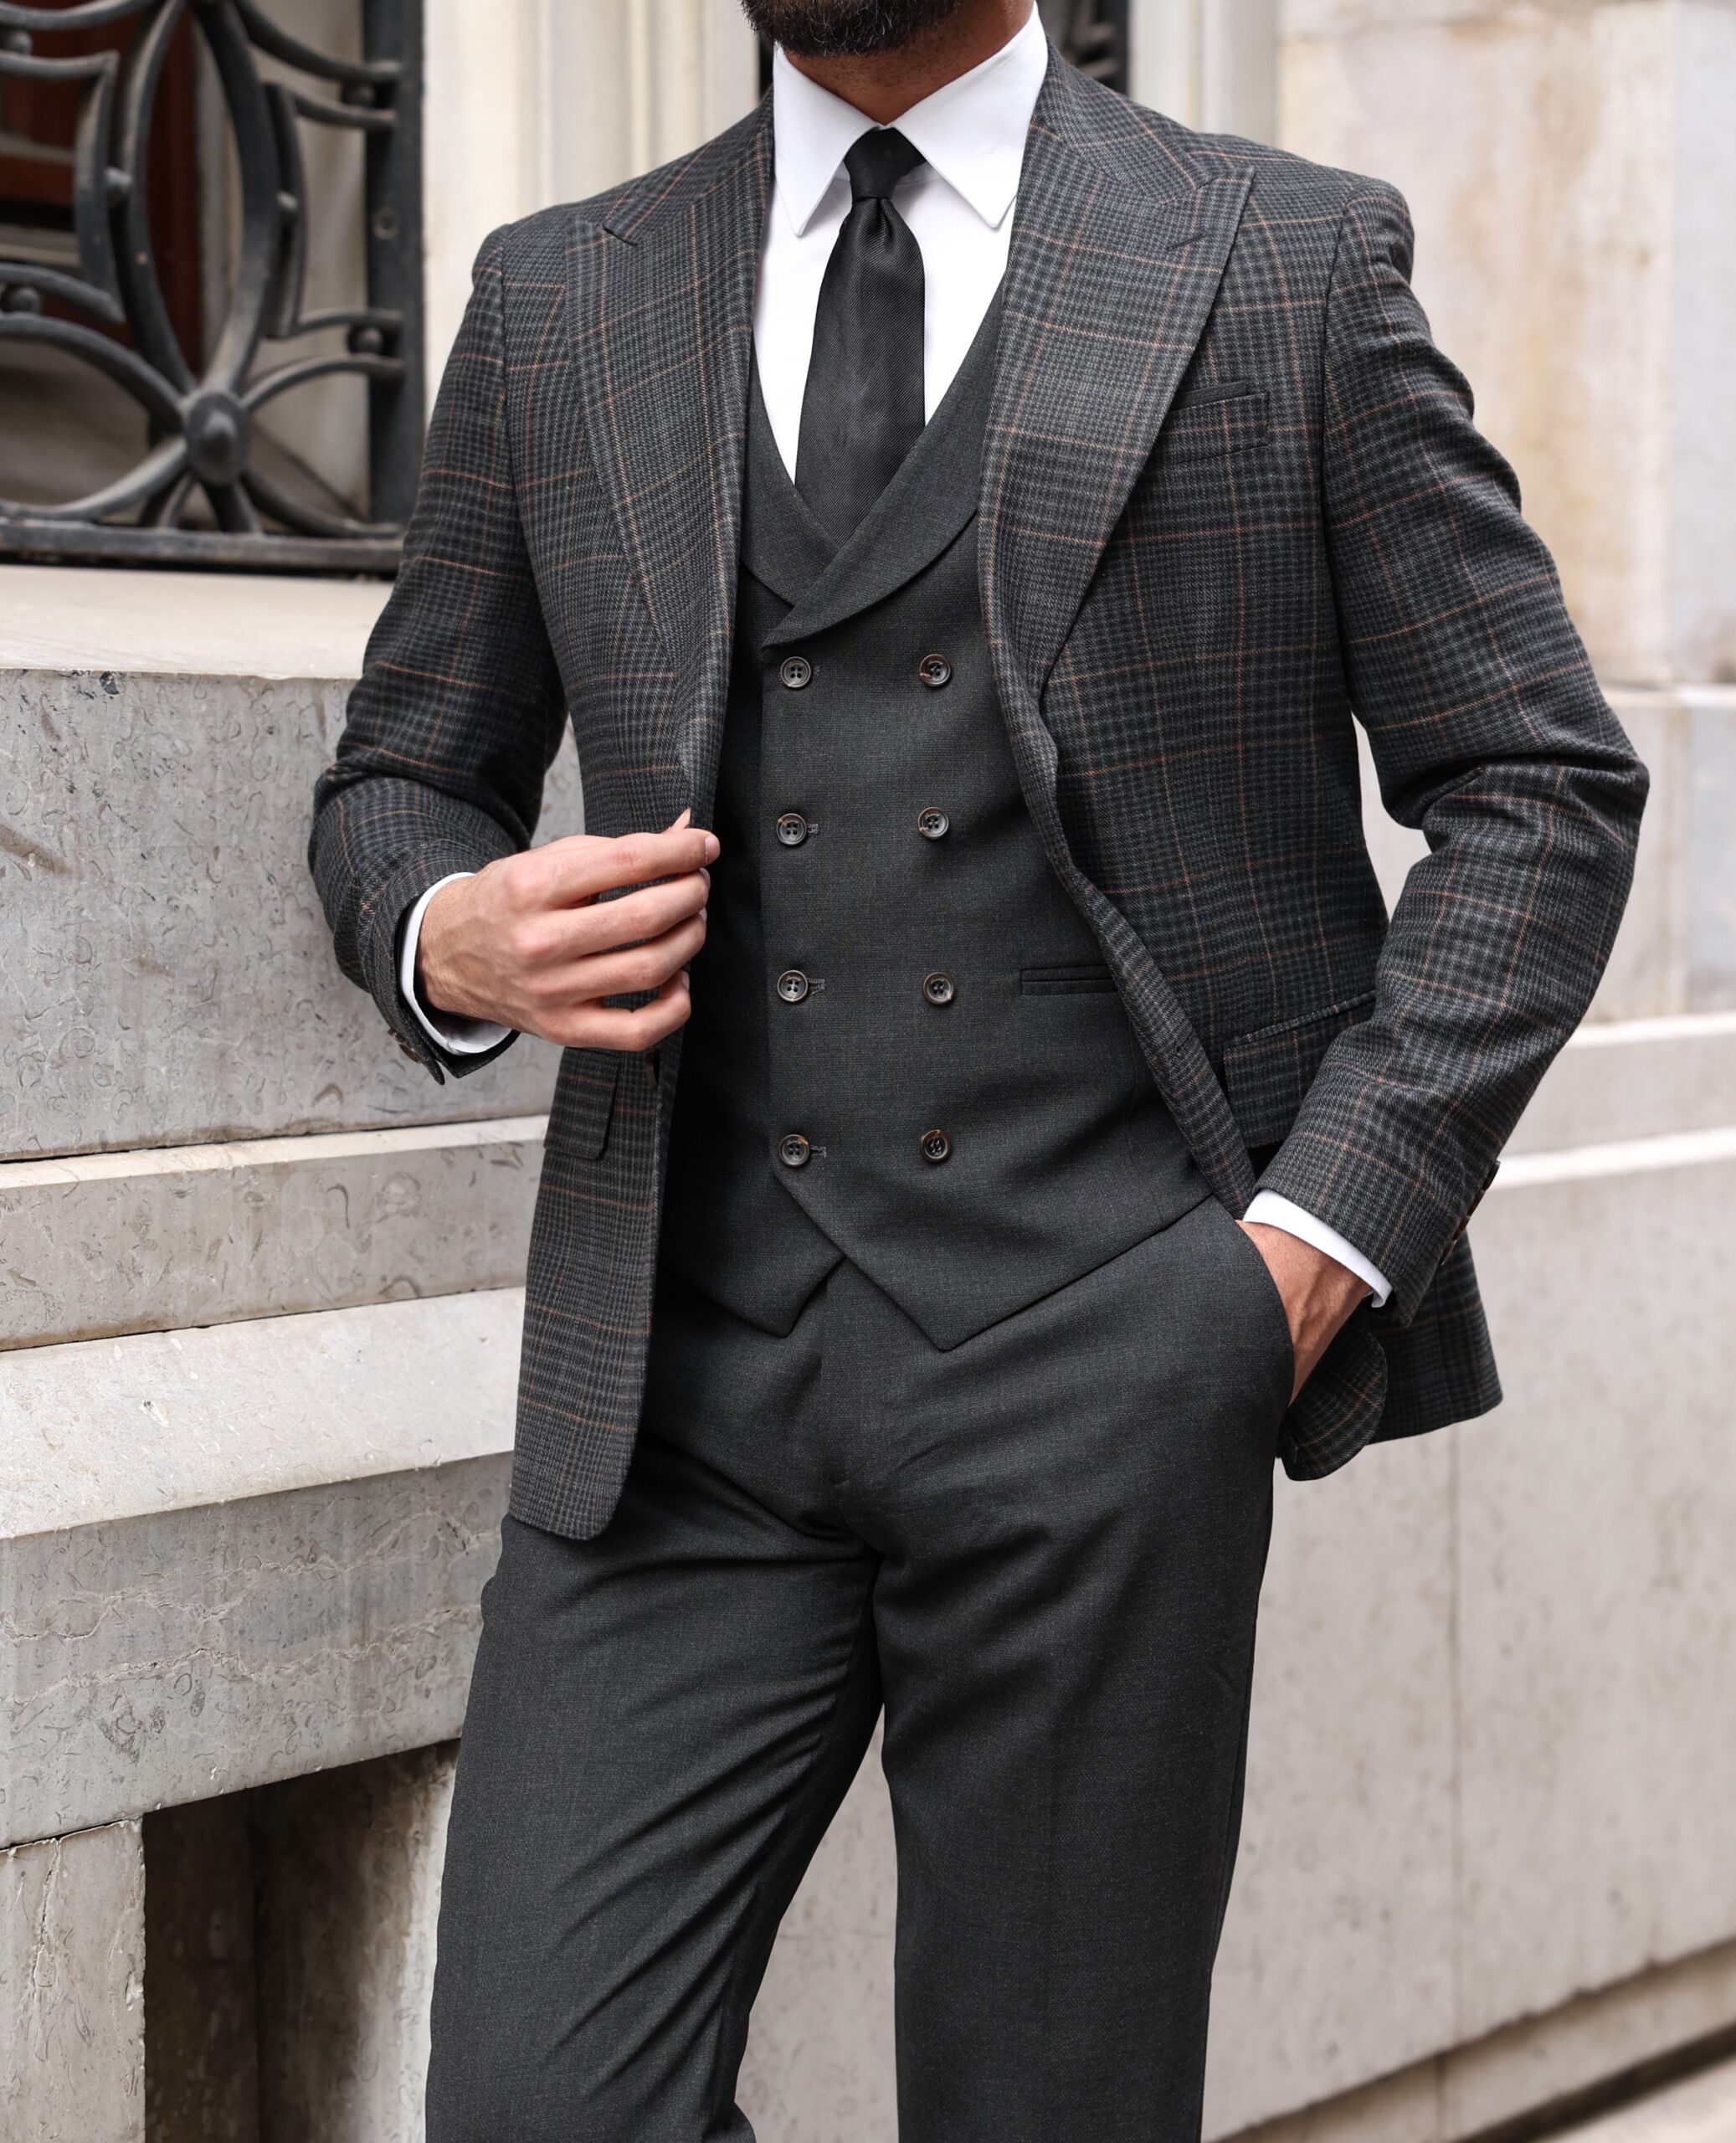 Buy SHIMLA COLLECTION V-Neck Waist Coat for Men Stylish Men's Black Blazer  Black Blended V-Neck Half Jacket Black Coat Suit Vest Men's Poly Viscose  Latest Waist Coat for Wedding Party Office Wear